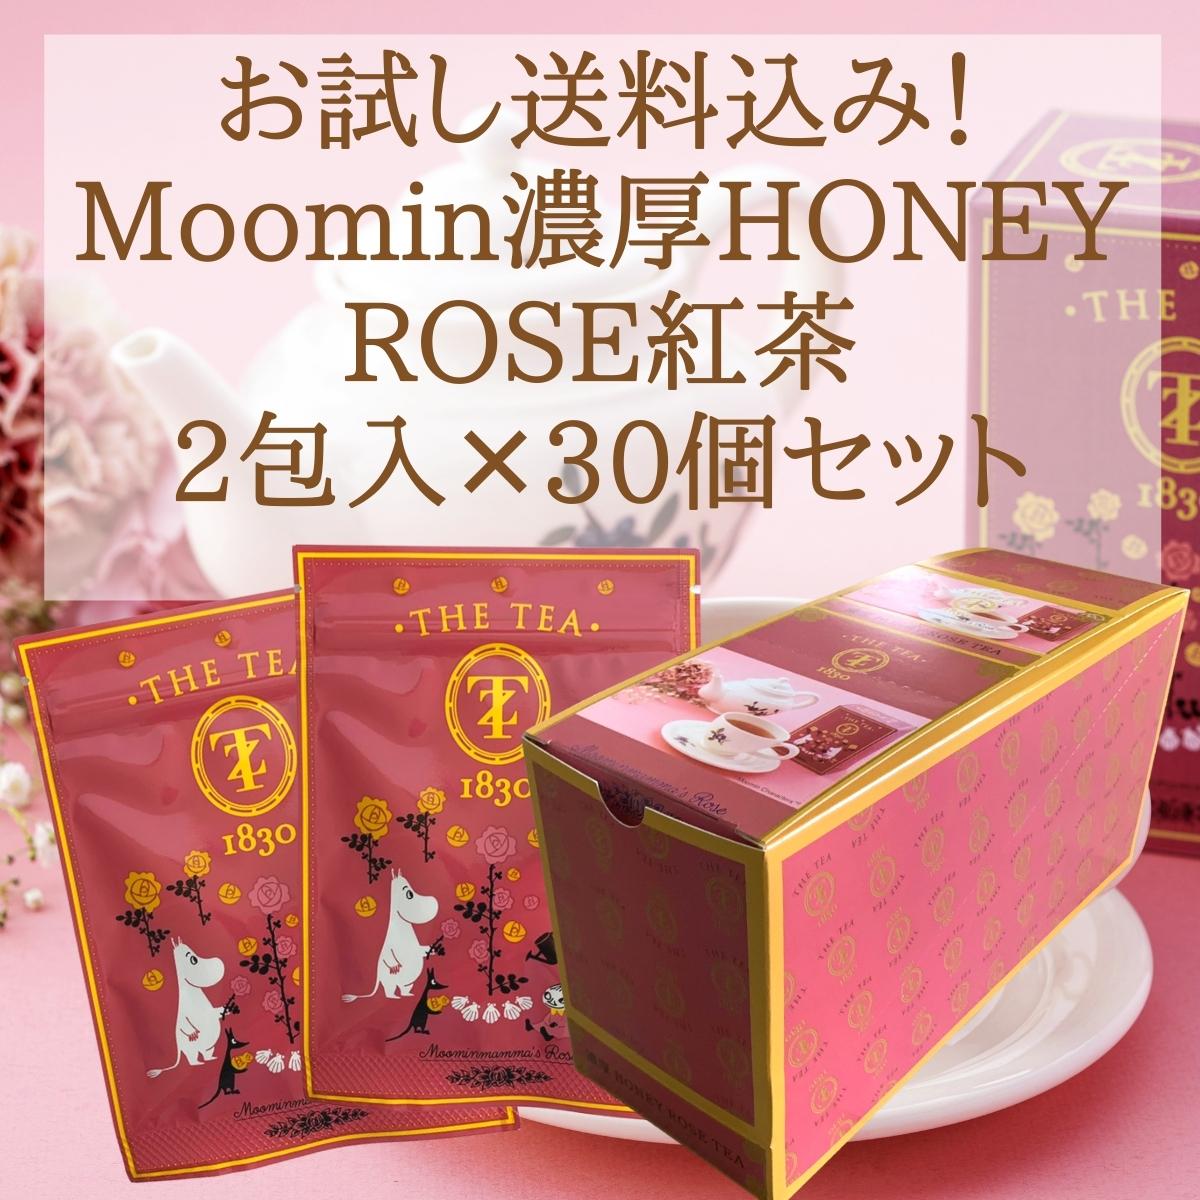 プレゼント 実用的 食べ物 ギフト Moominmamma’s Rose お試し濃厚HONEY ROSE紅茶 (2包×30) TYAZEN(茶善) ティーバッグ ギフト おしゃれ 高級 プレゼント ムーミン お配り